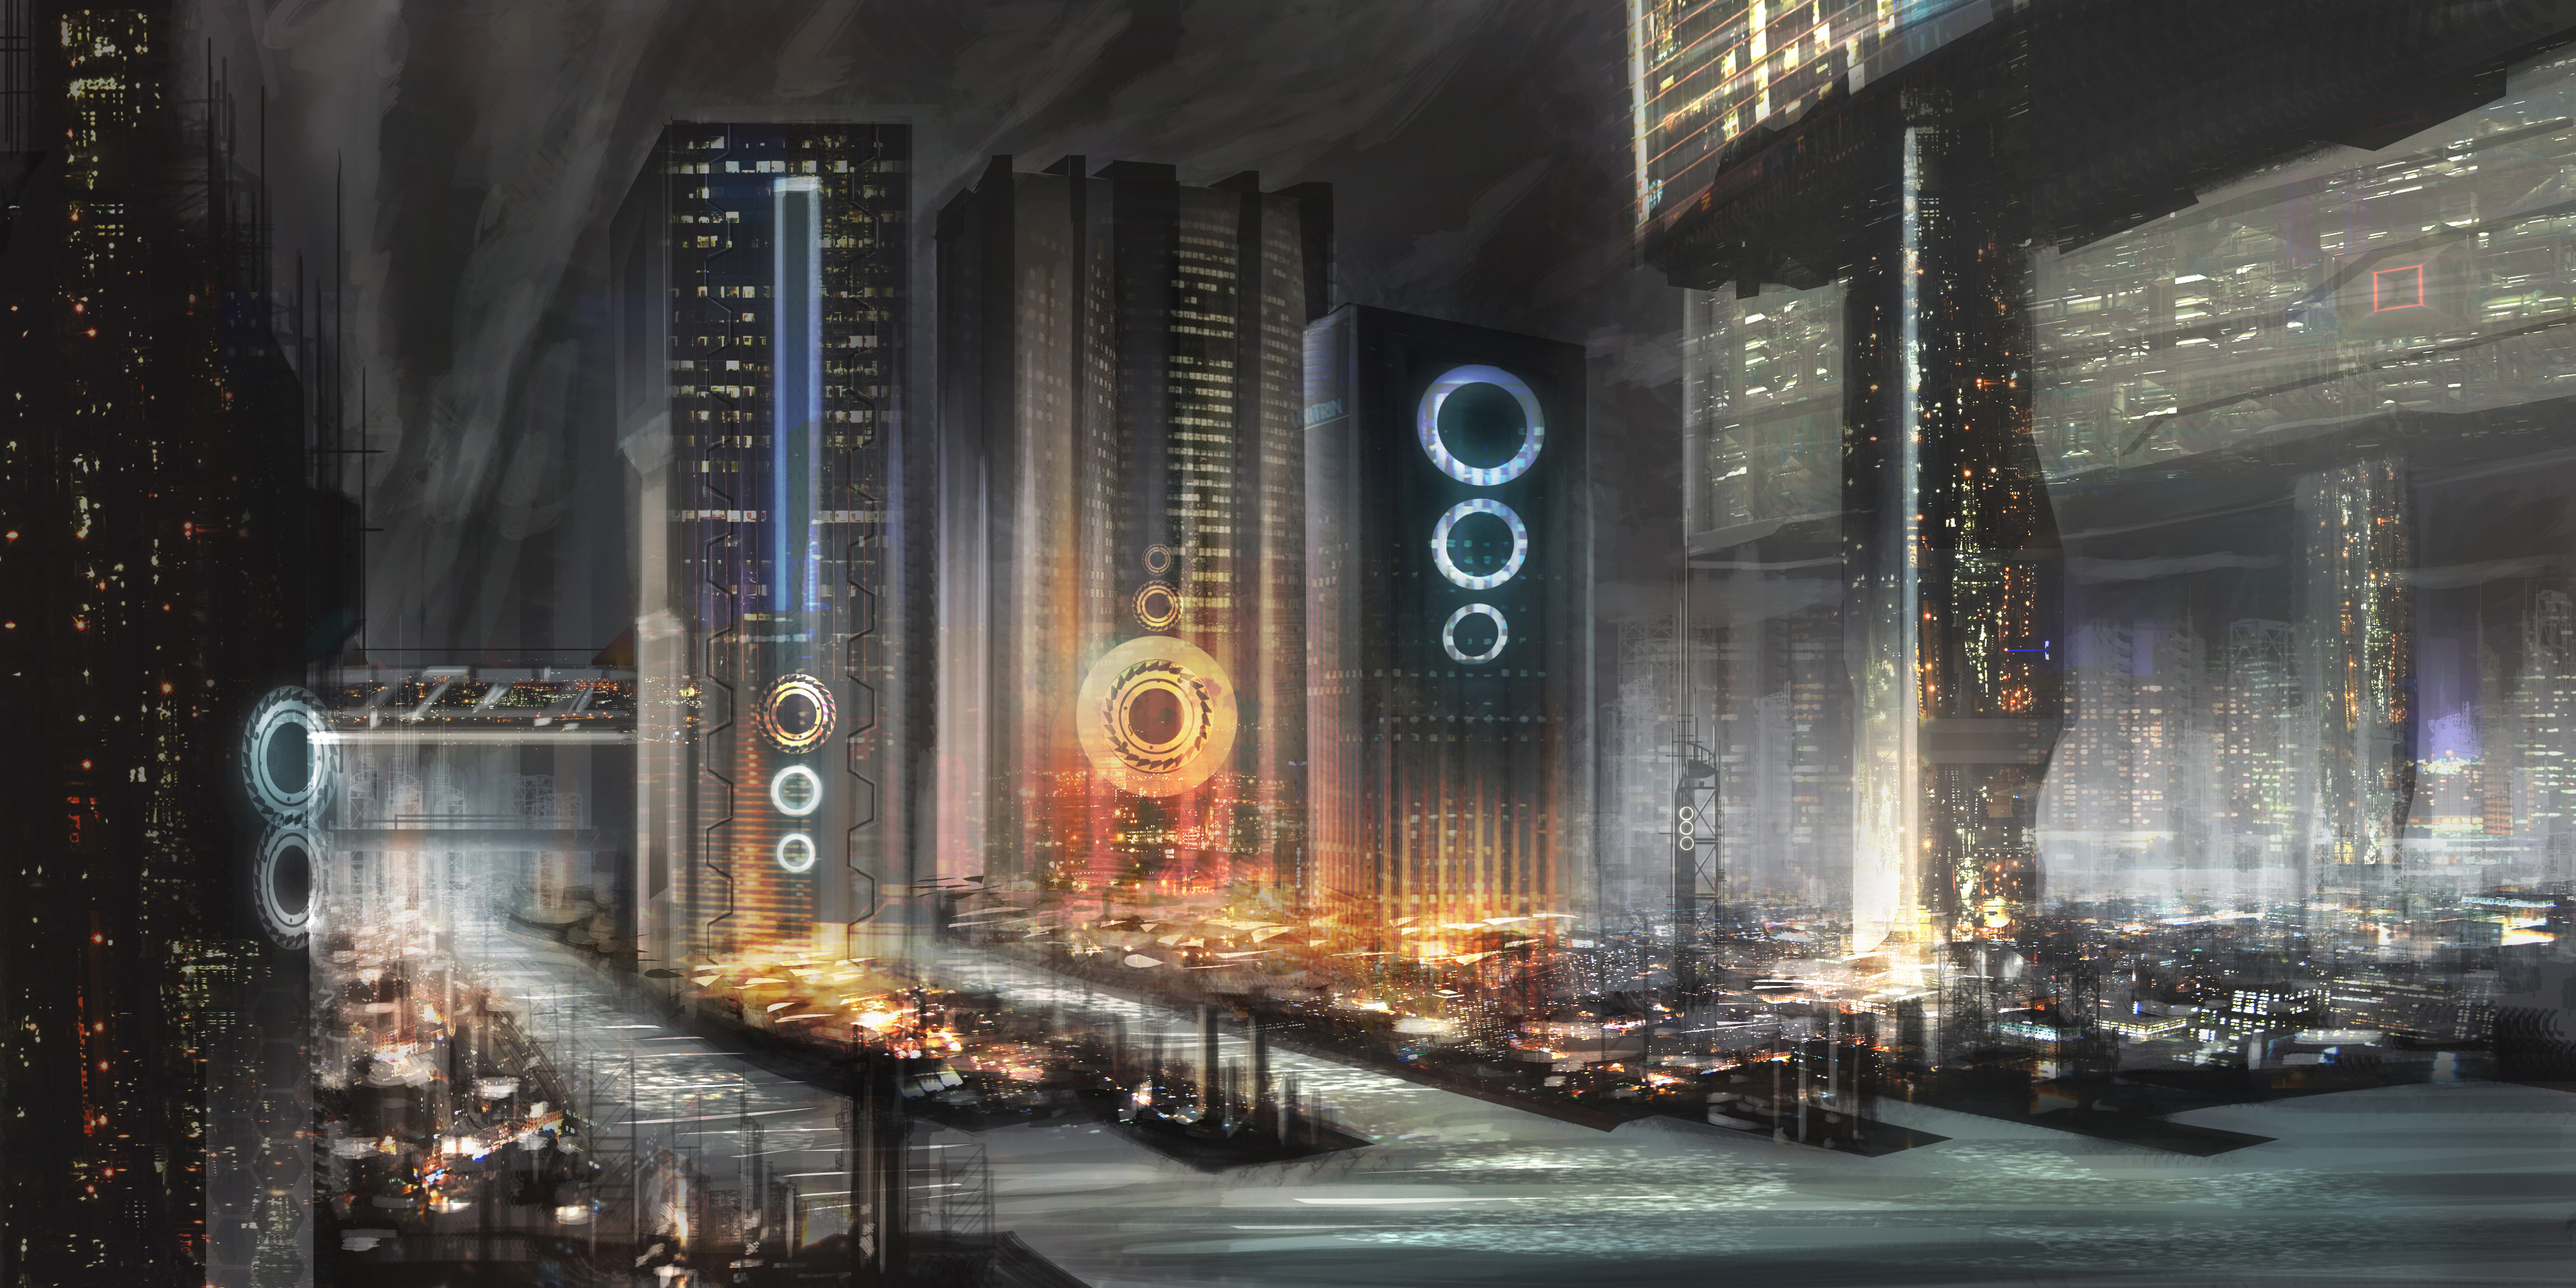 Free download wallpaper City, Skyscraper, Building, Sci Fi, Futuristic City on your PC desktop